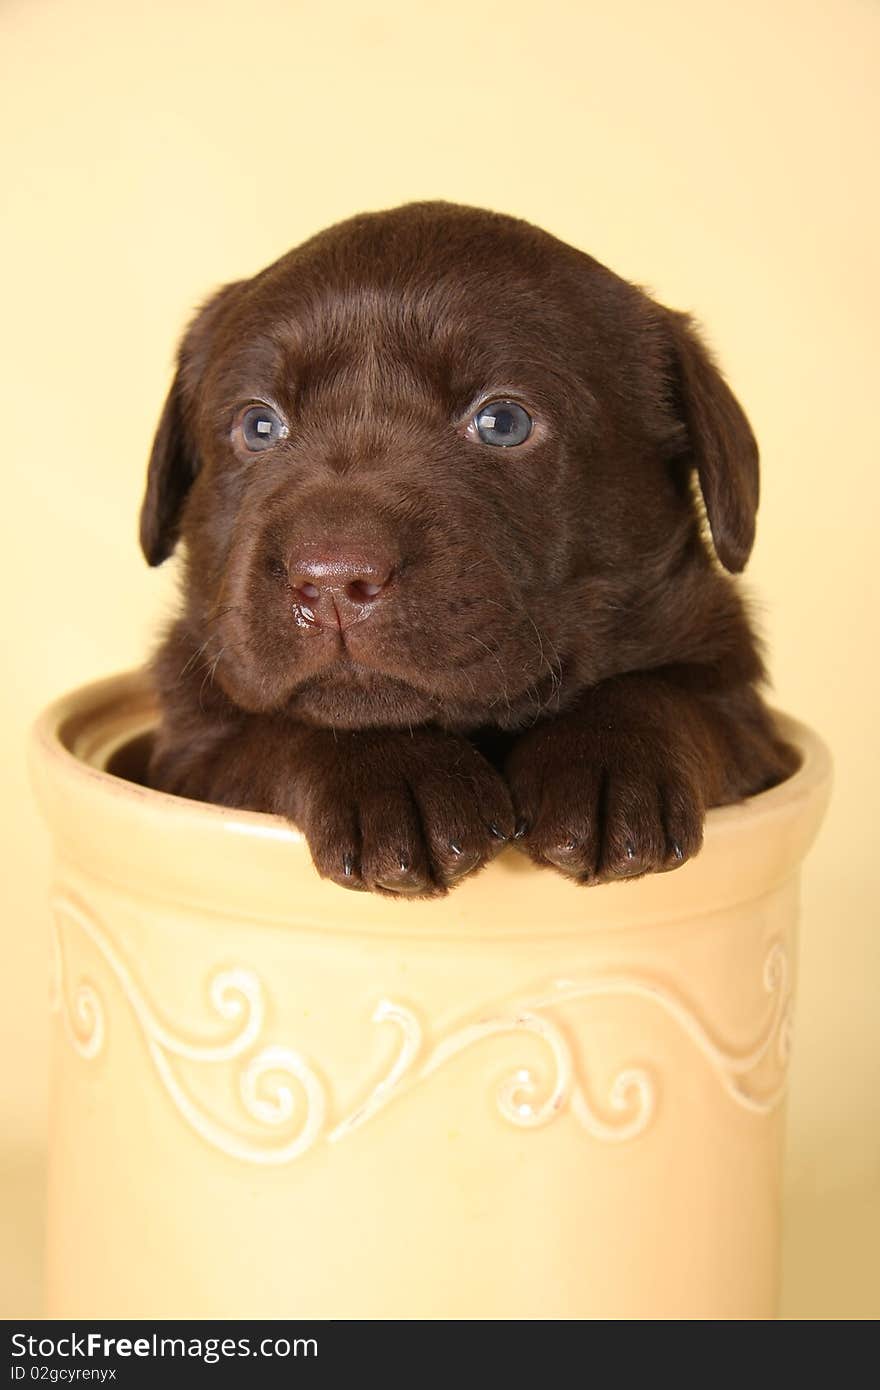 Labrador puppy in a cookie jar.